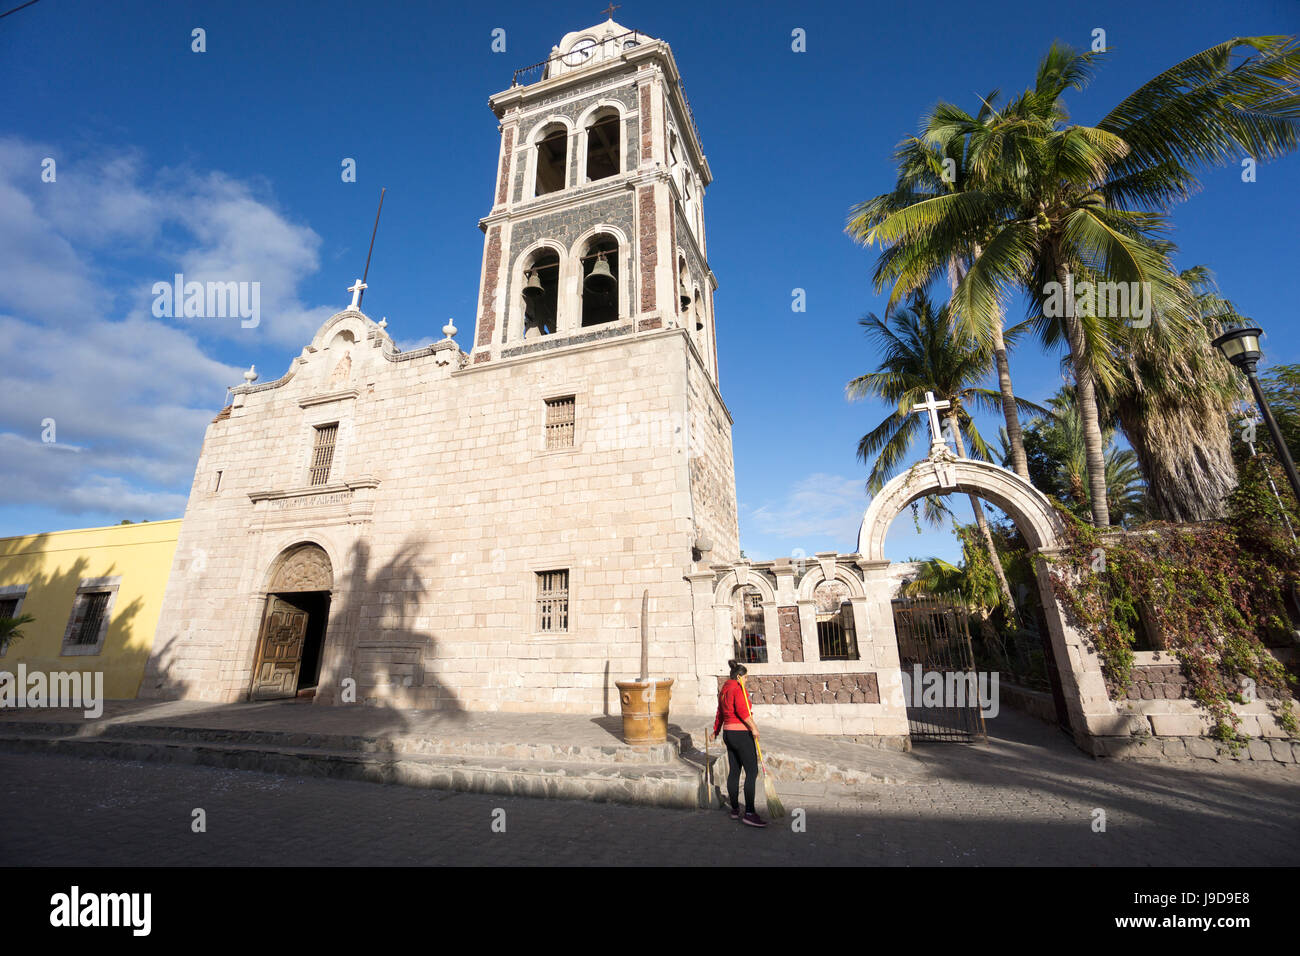 Church la Signora de Loreto 1697, the first Jesuit mission in Baja California, San Loreto, Baja California, Mexico Stock Photo